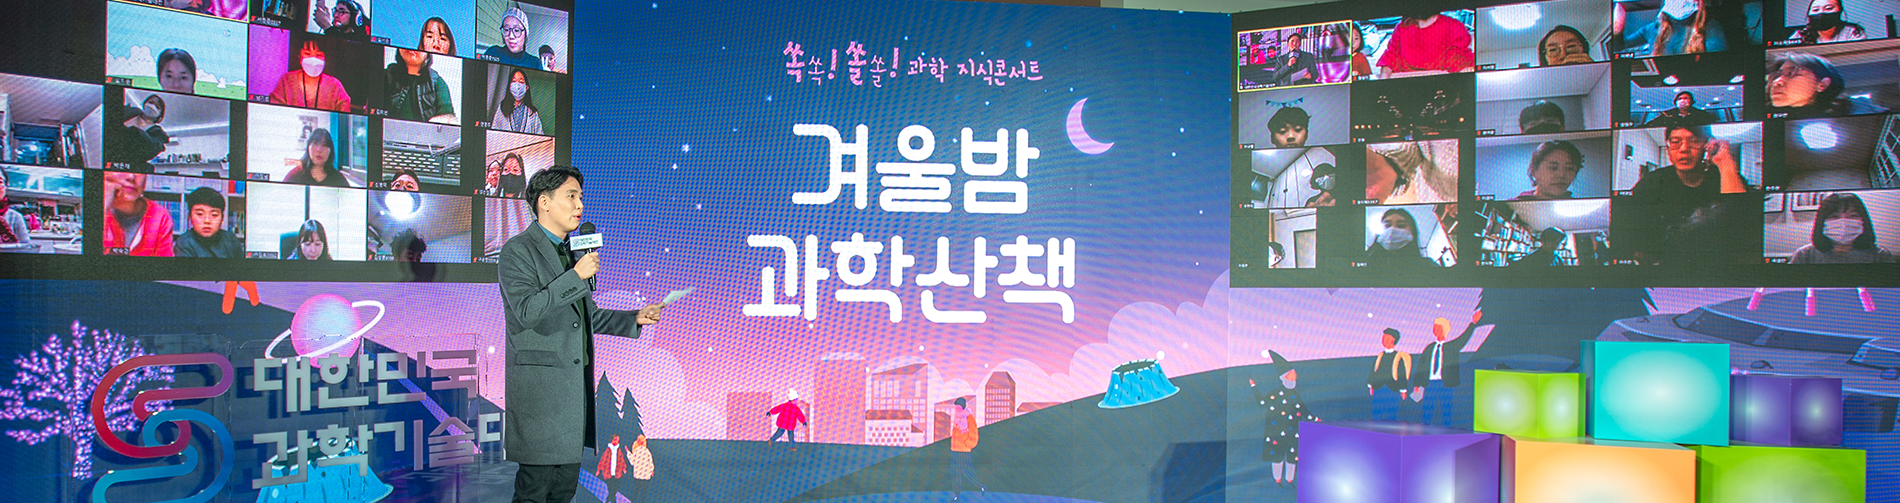 대한민국 과학기술 쏙쏙! 쏠쏠! 과학 지식콘서트 겨울밤과학산책